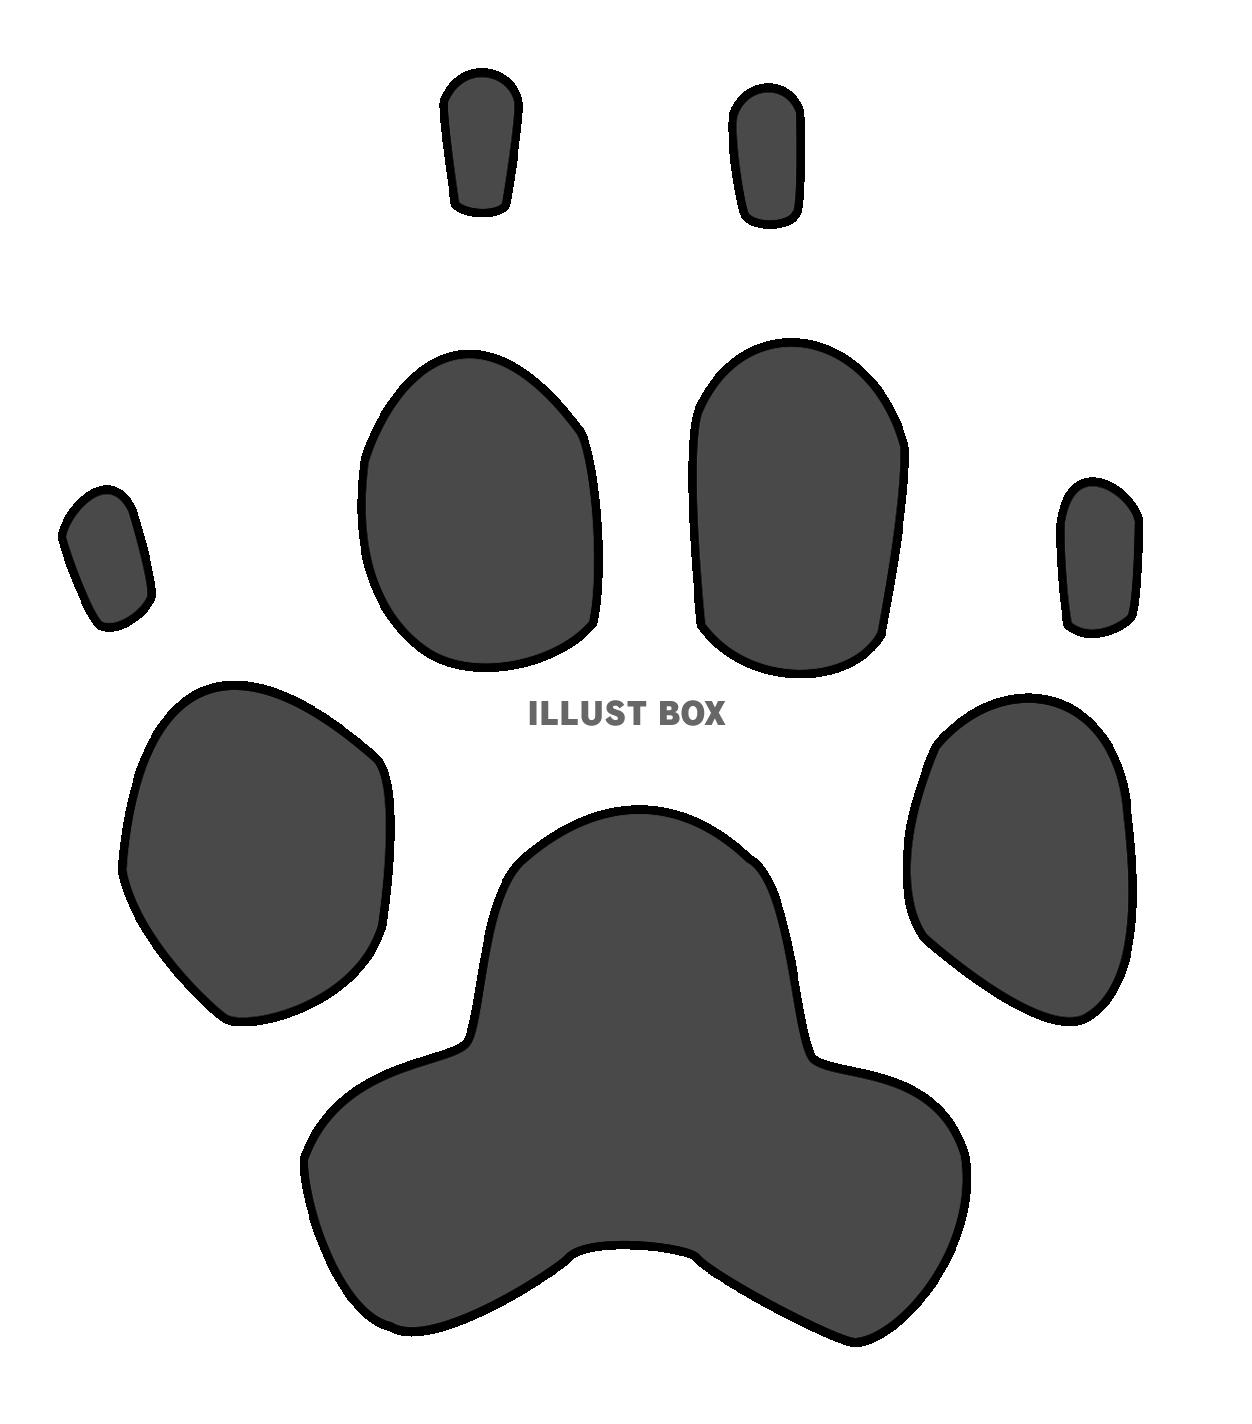 犬の足跡